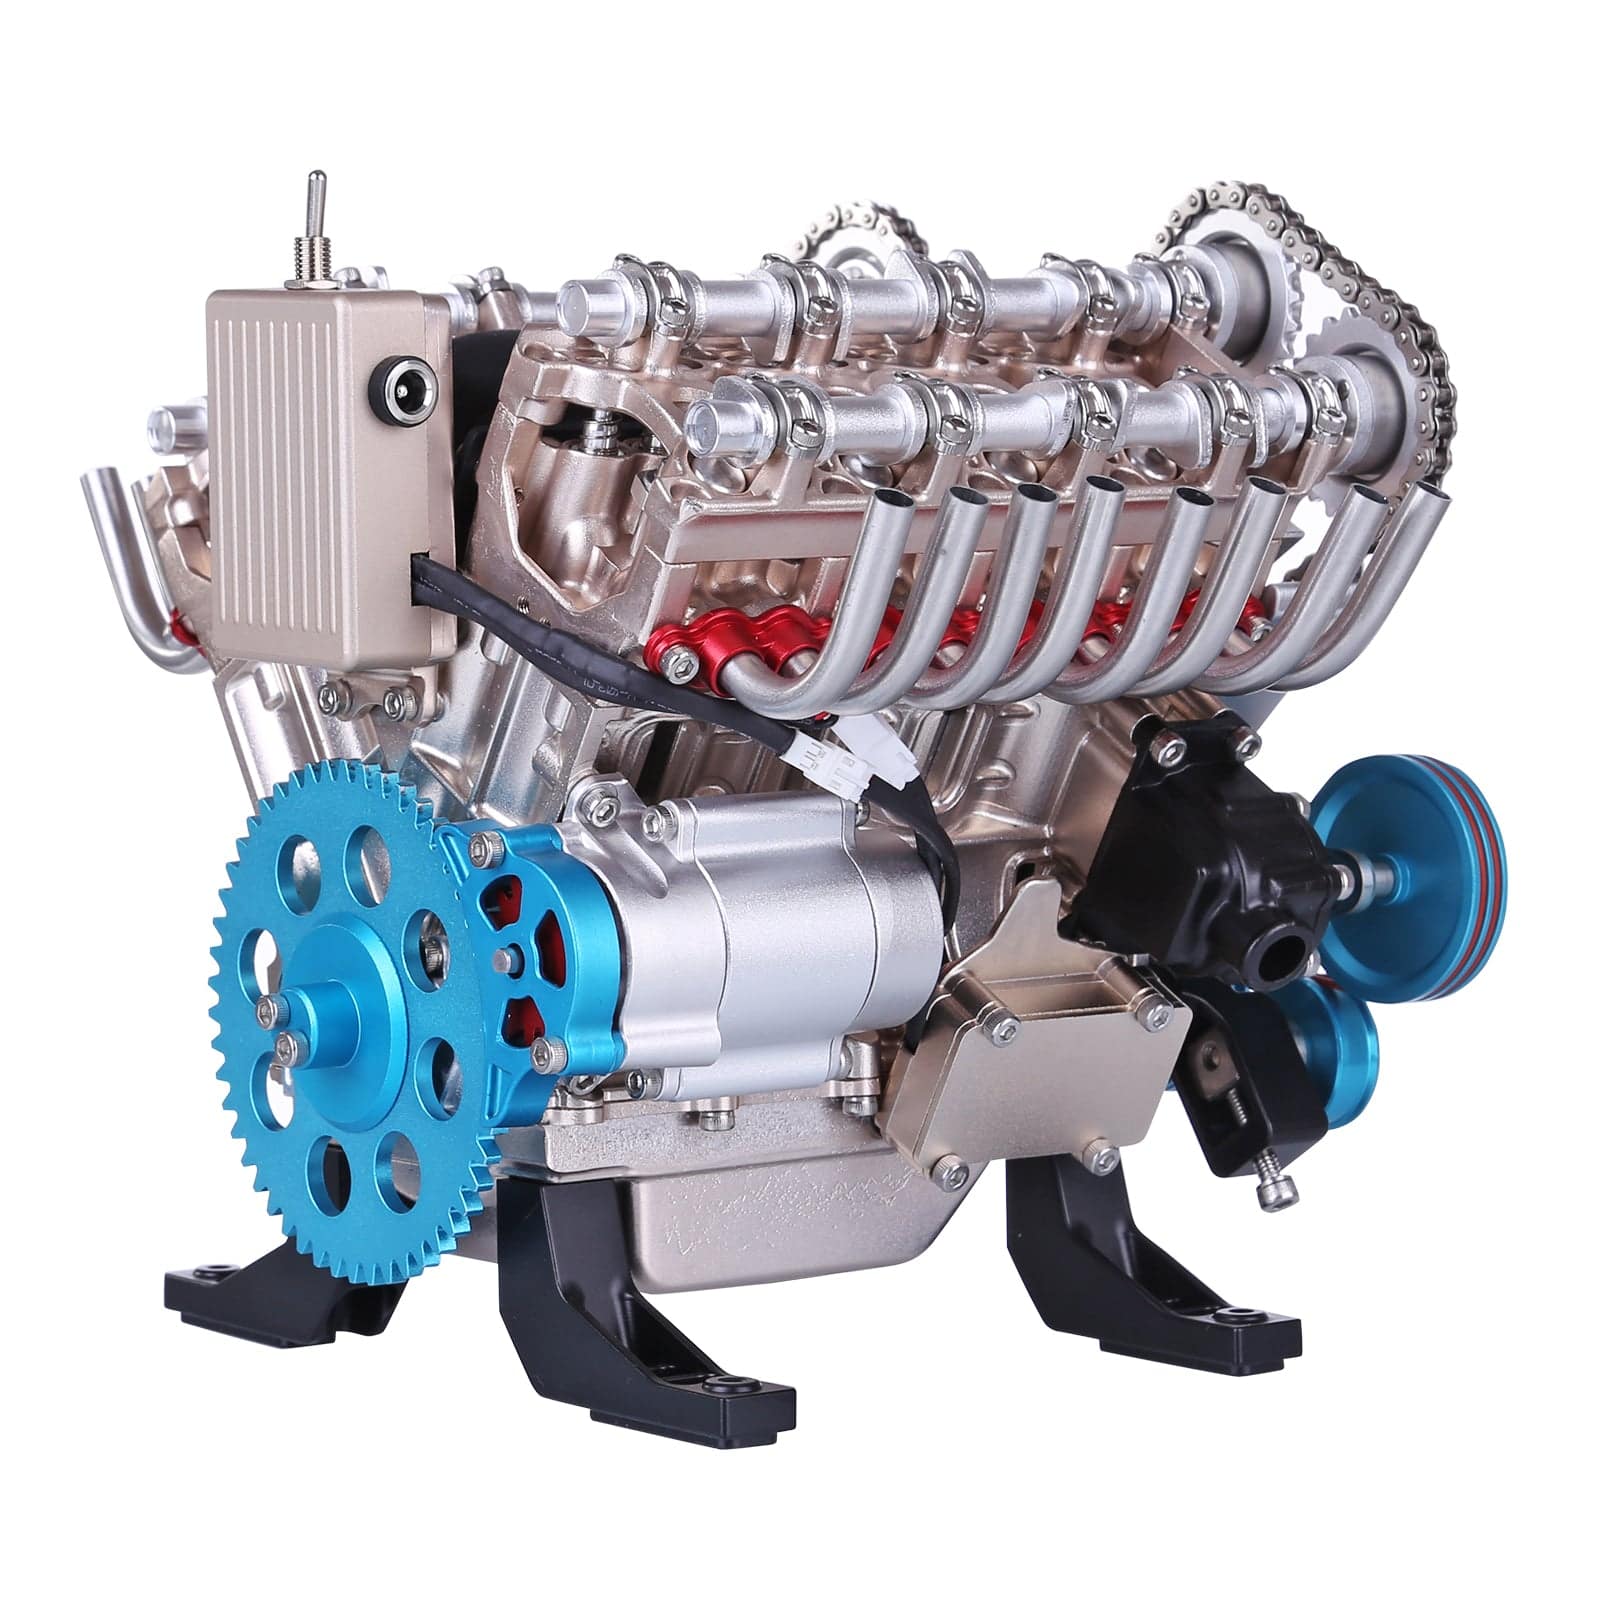 Teching V8 1:3 - Construa Seu Próprio Motor V8 Que Funciona Em Metal 